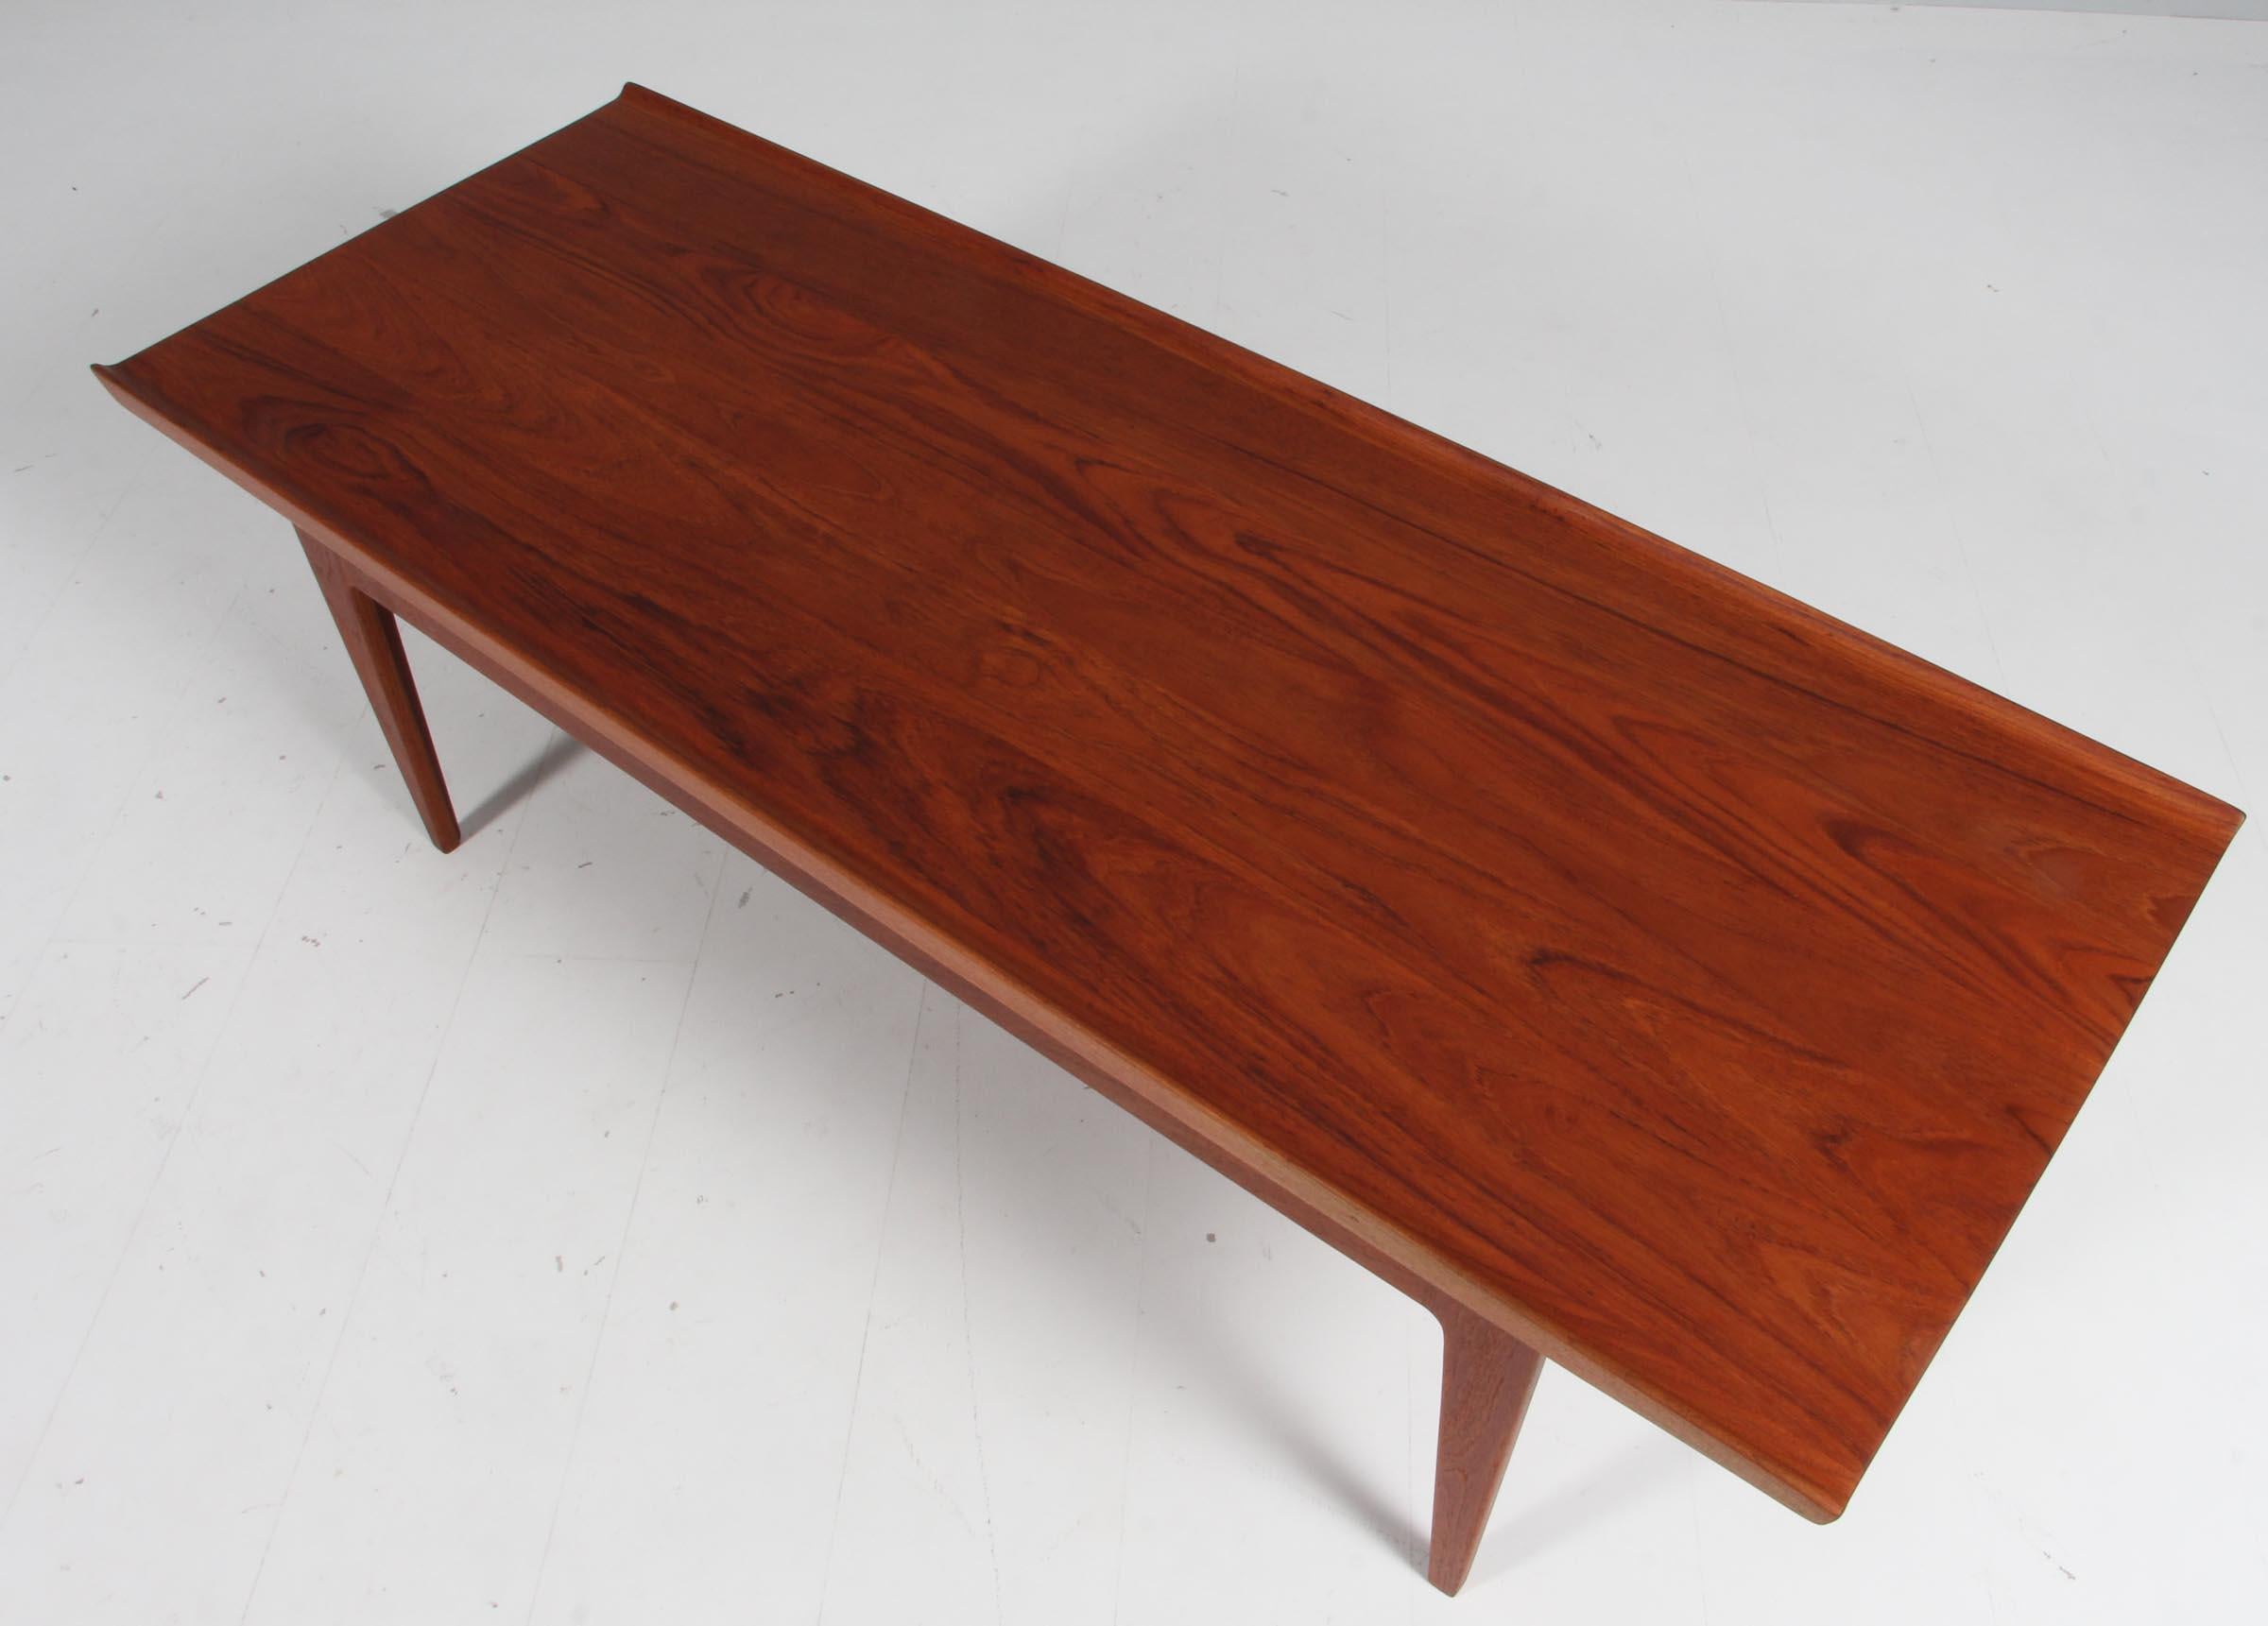 Finn juhl sofa table in solid teak, model 500 2